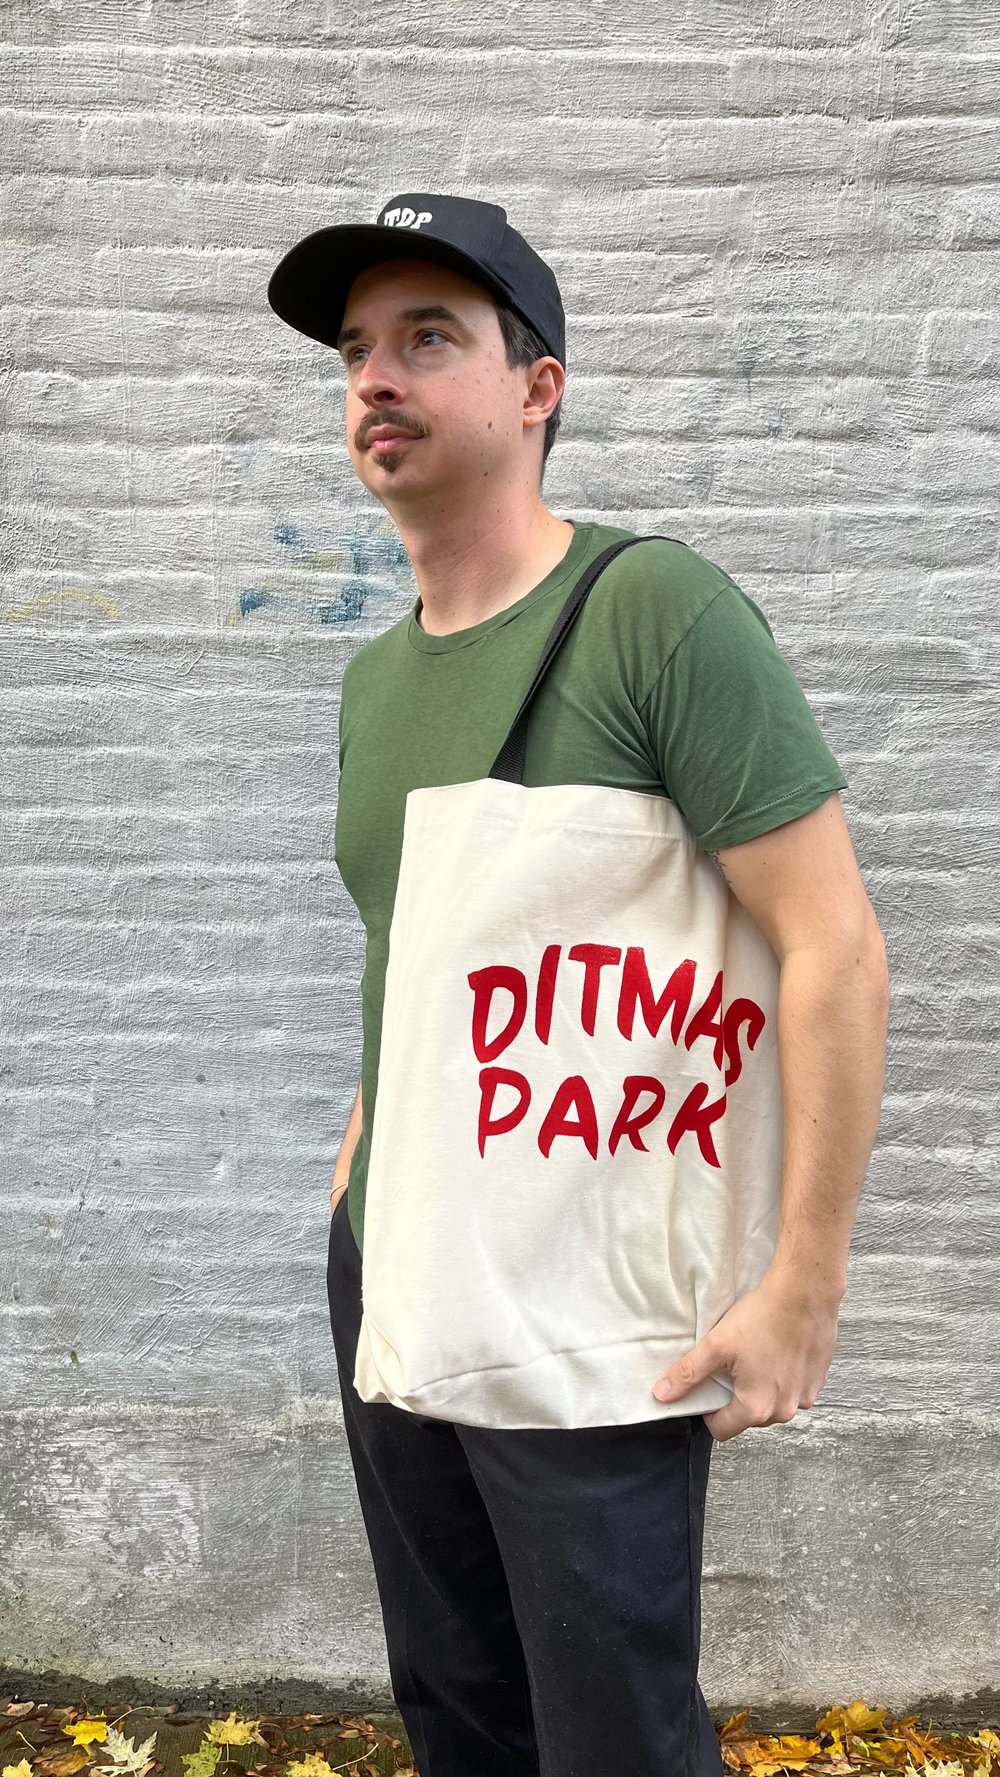 Ditmas Park Tote Bag